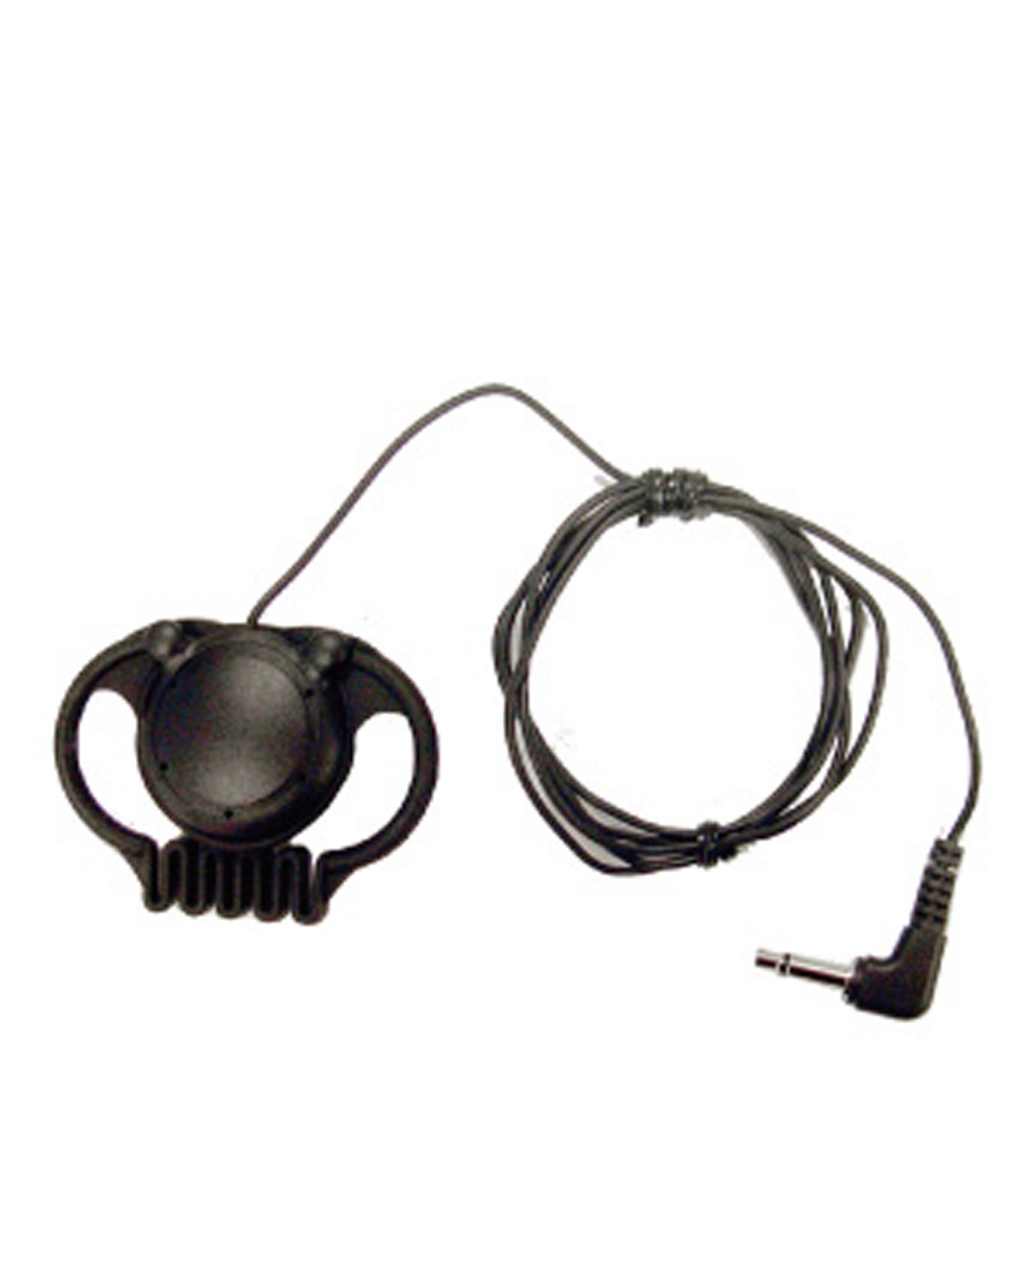 EC-18 Single earphone